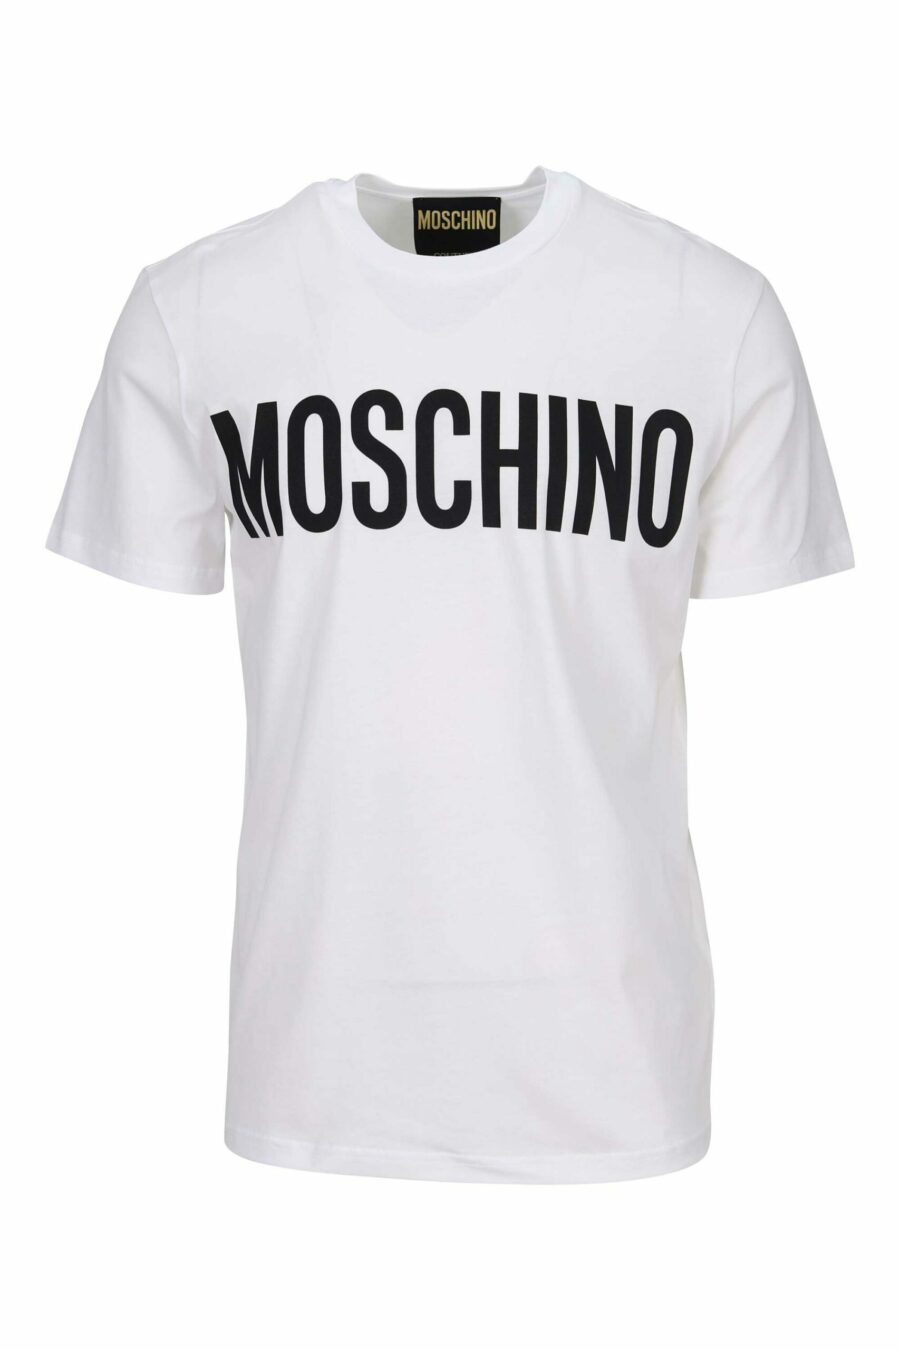 Camiseta blanca "oversize" de algodón orgánico con maxilogo negro clásico - 667113751788 scaled